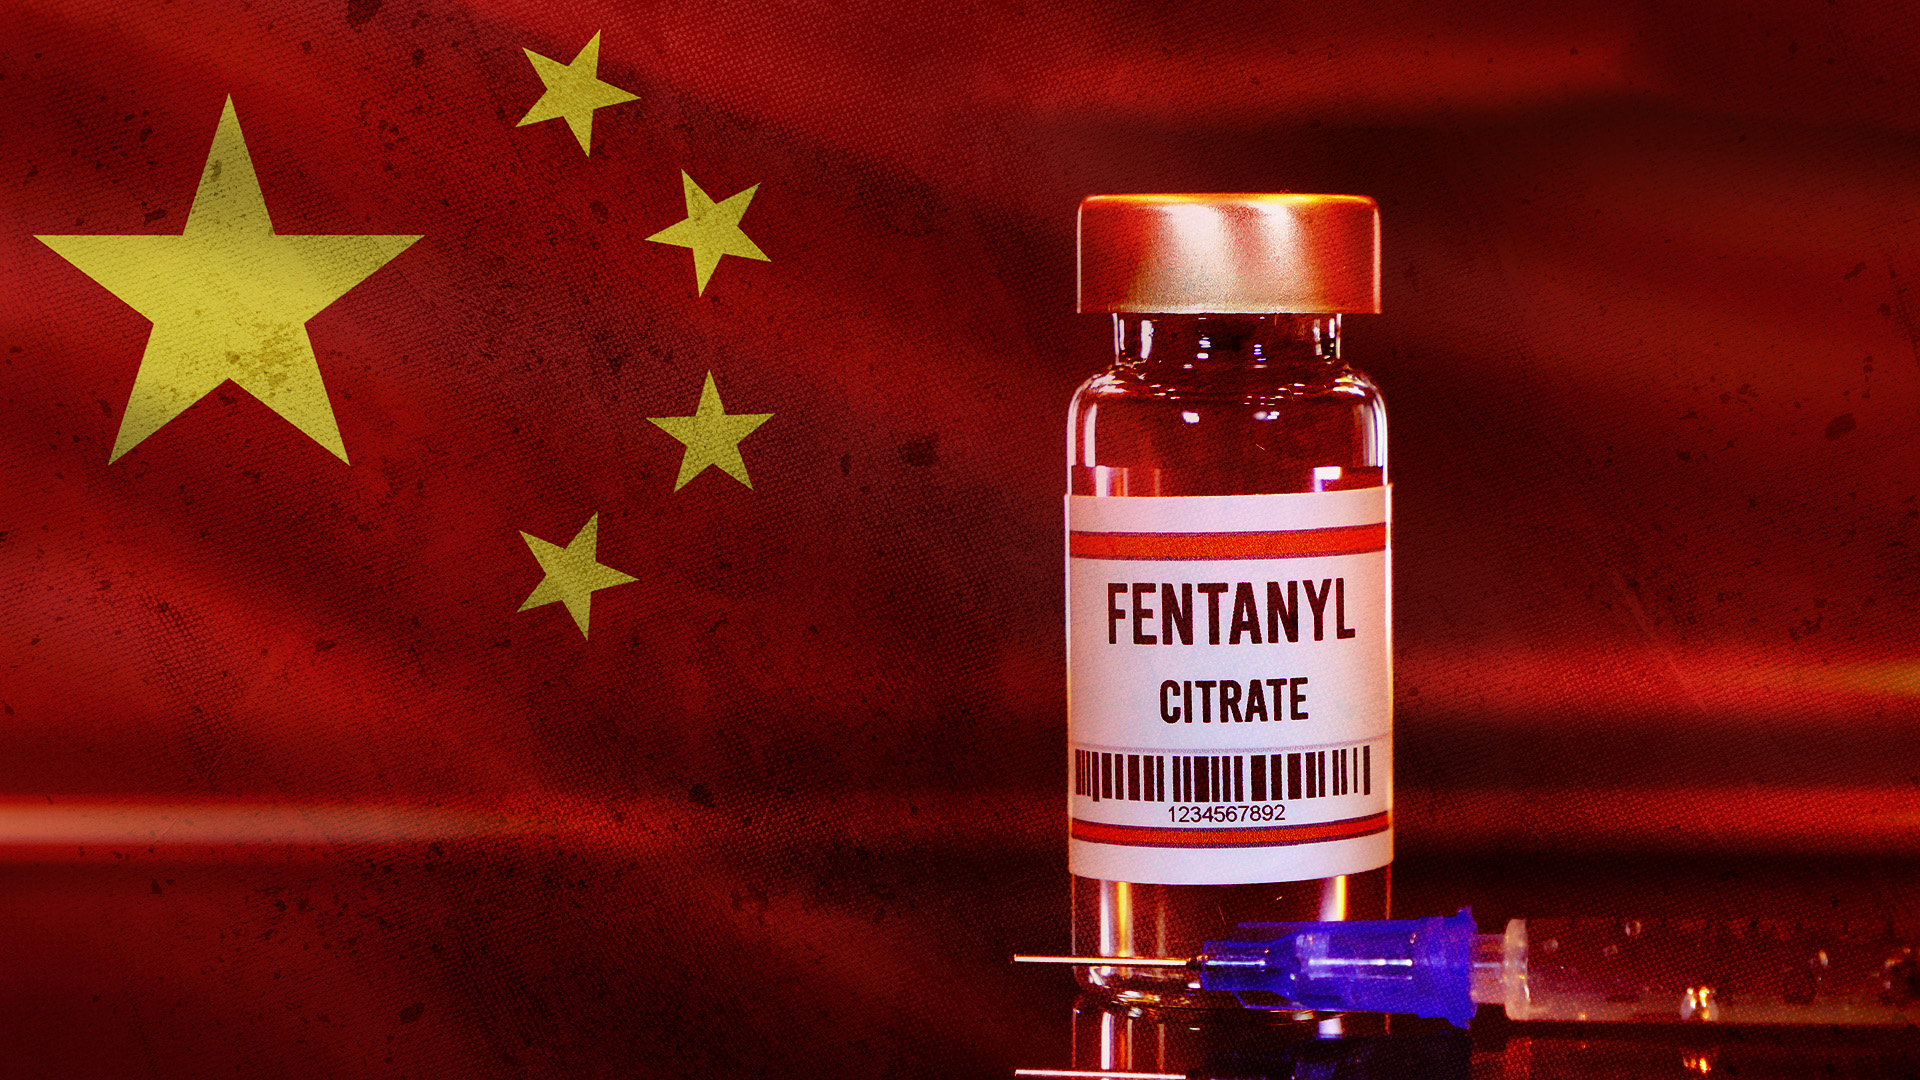 Cónsul de China en Tijuana defendió la producción de fentanilo asiático por ser “para uso medicinal”